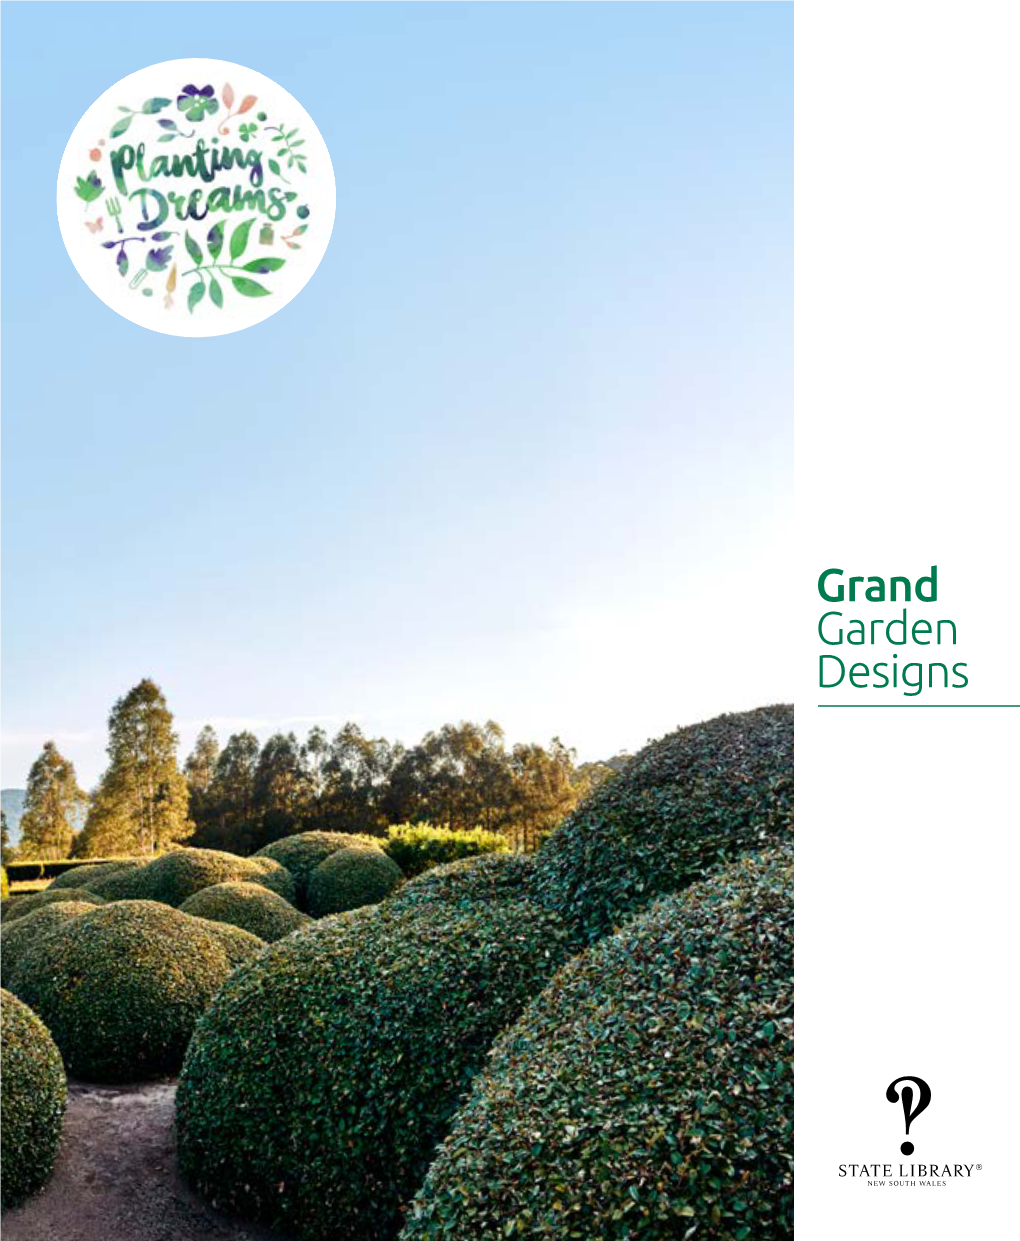 Planting Dreams: Grand Garden Designs Exhibition Guide